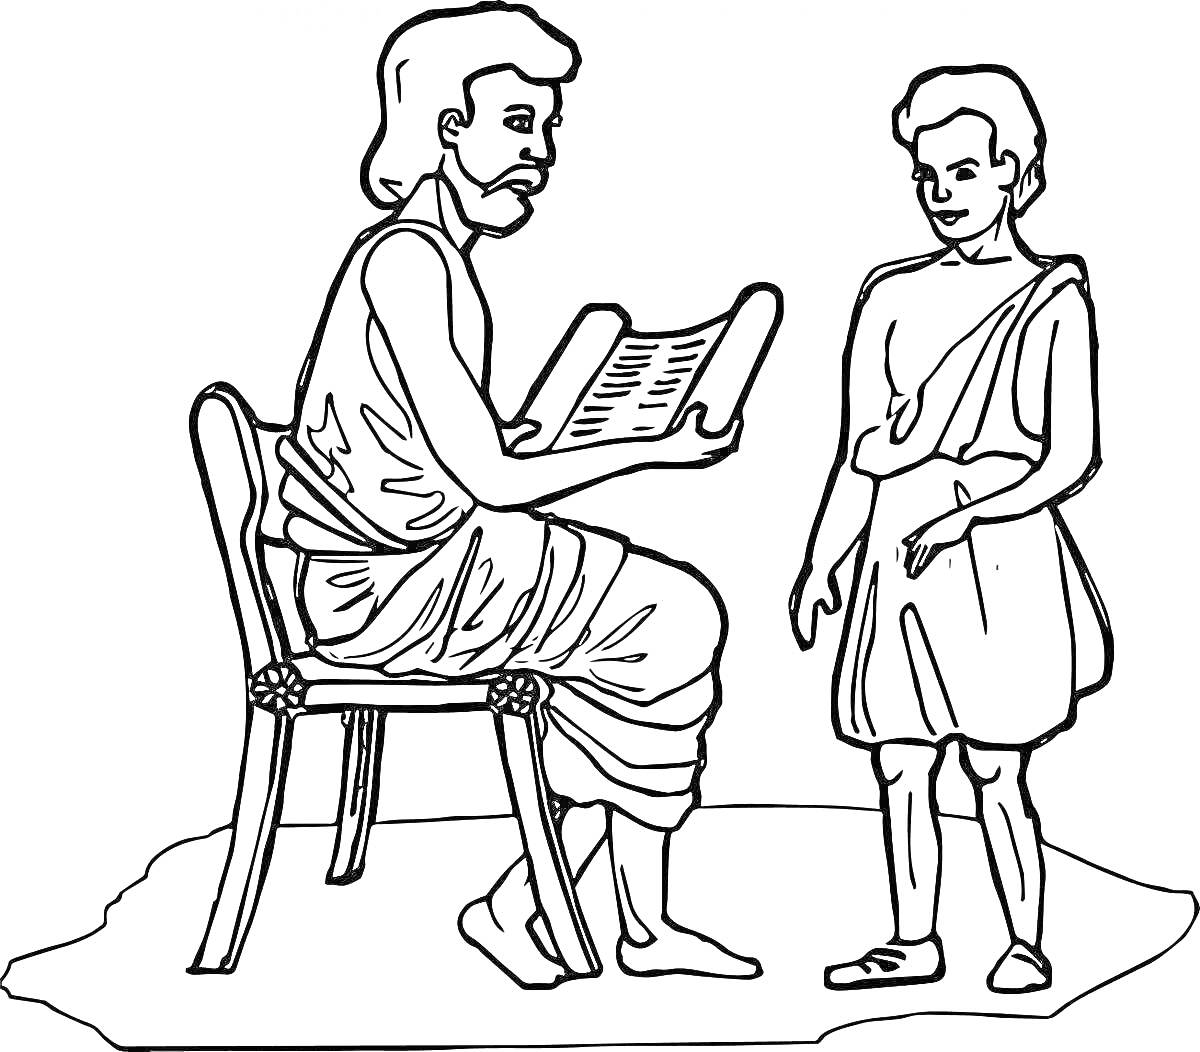 Раскраска Урок в Древней Греции: взрослый мужчина в хитоне сидит на стуле и читает из свитка мальчику, который стоит рядом